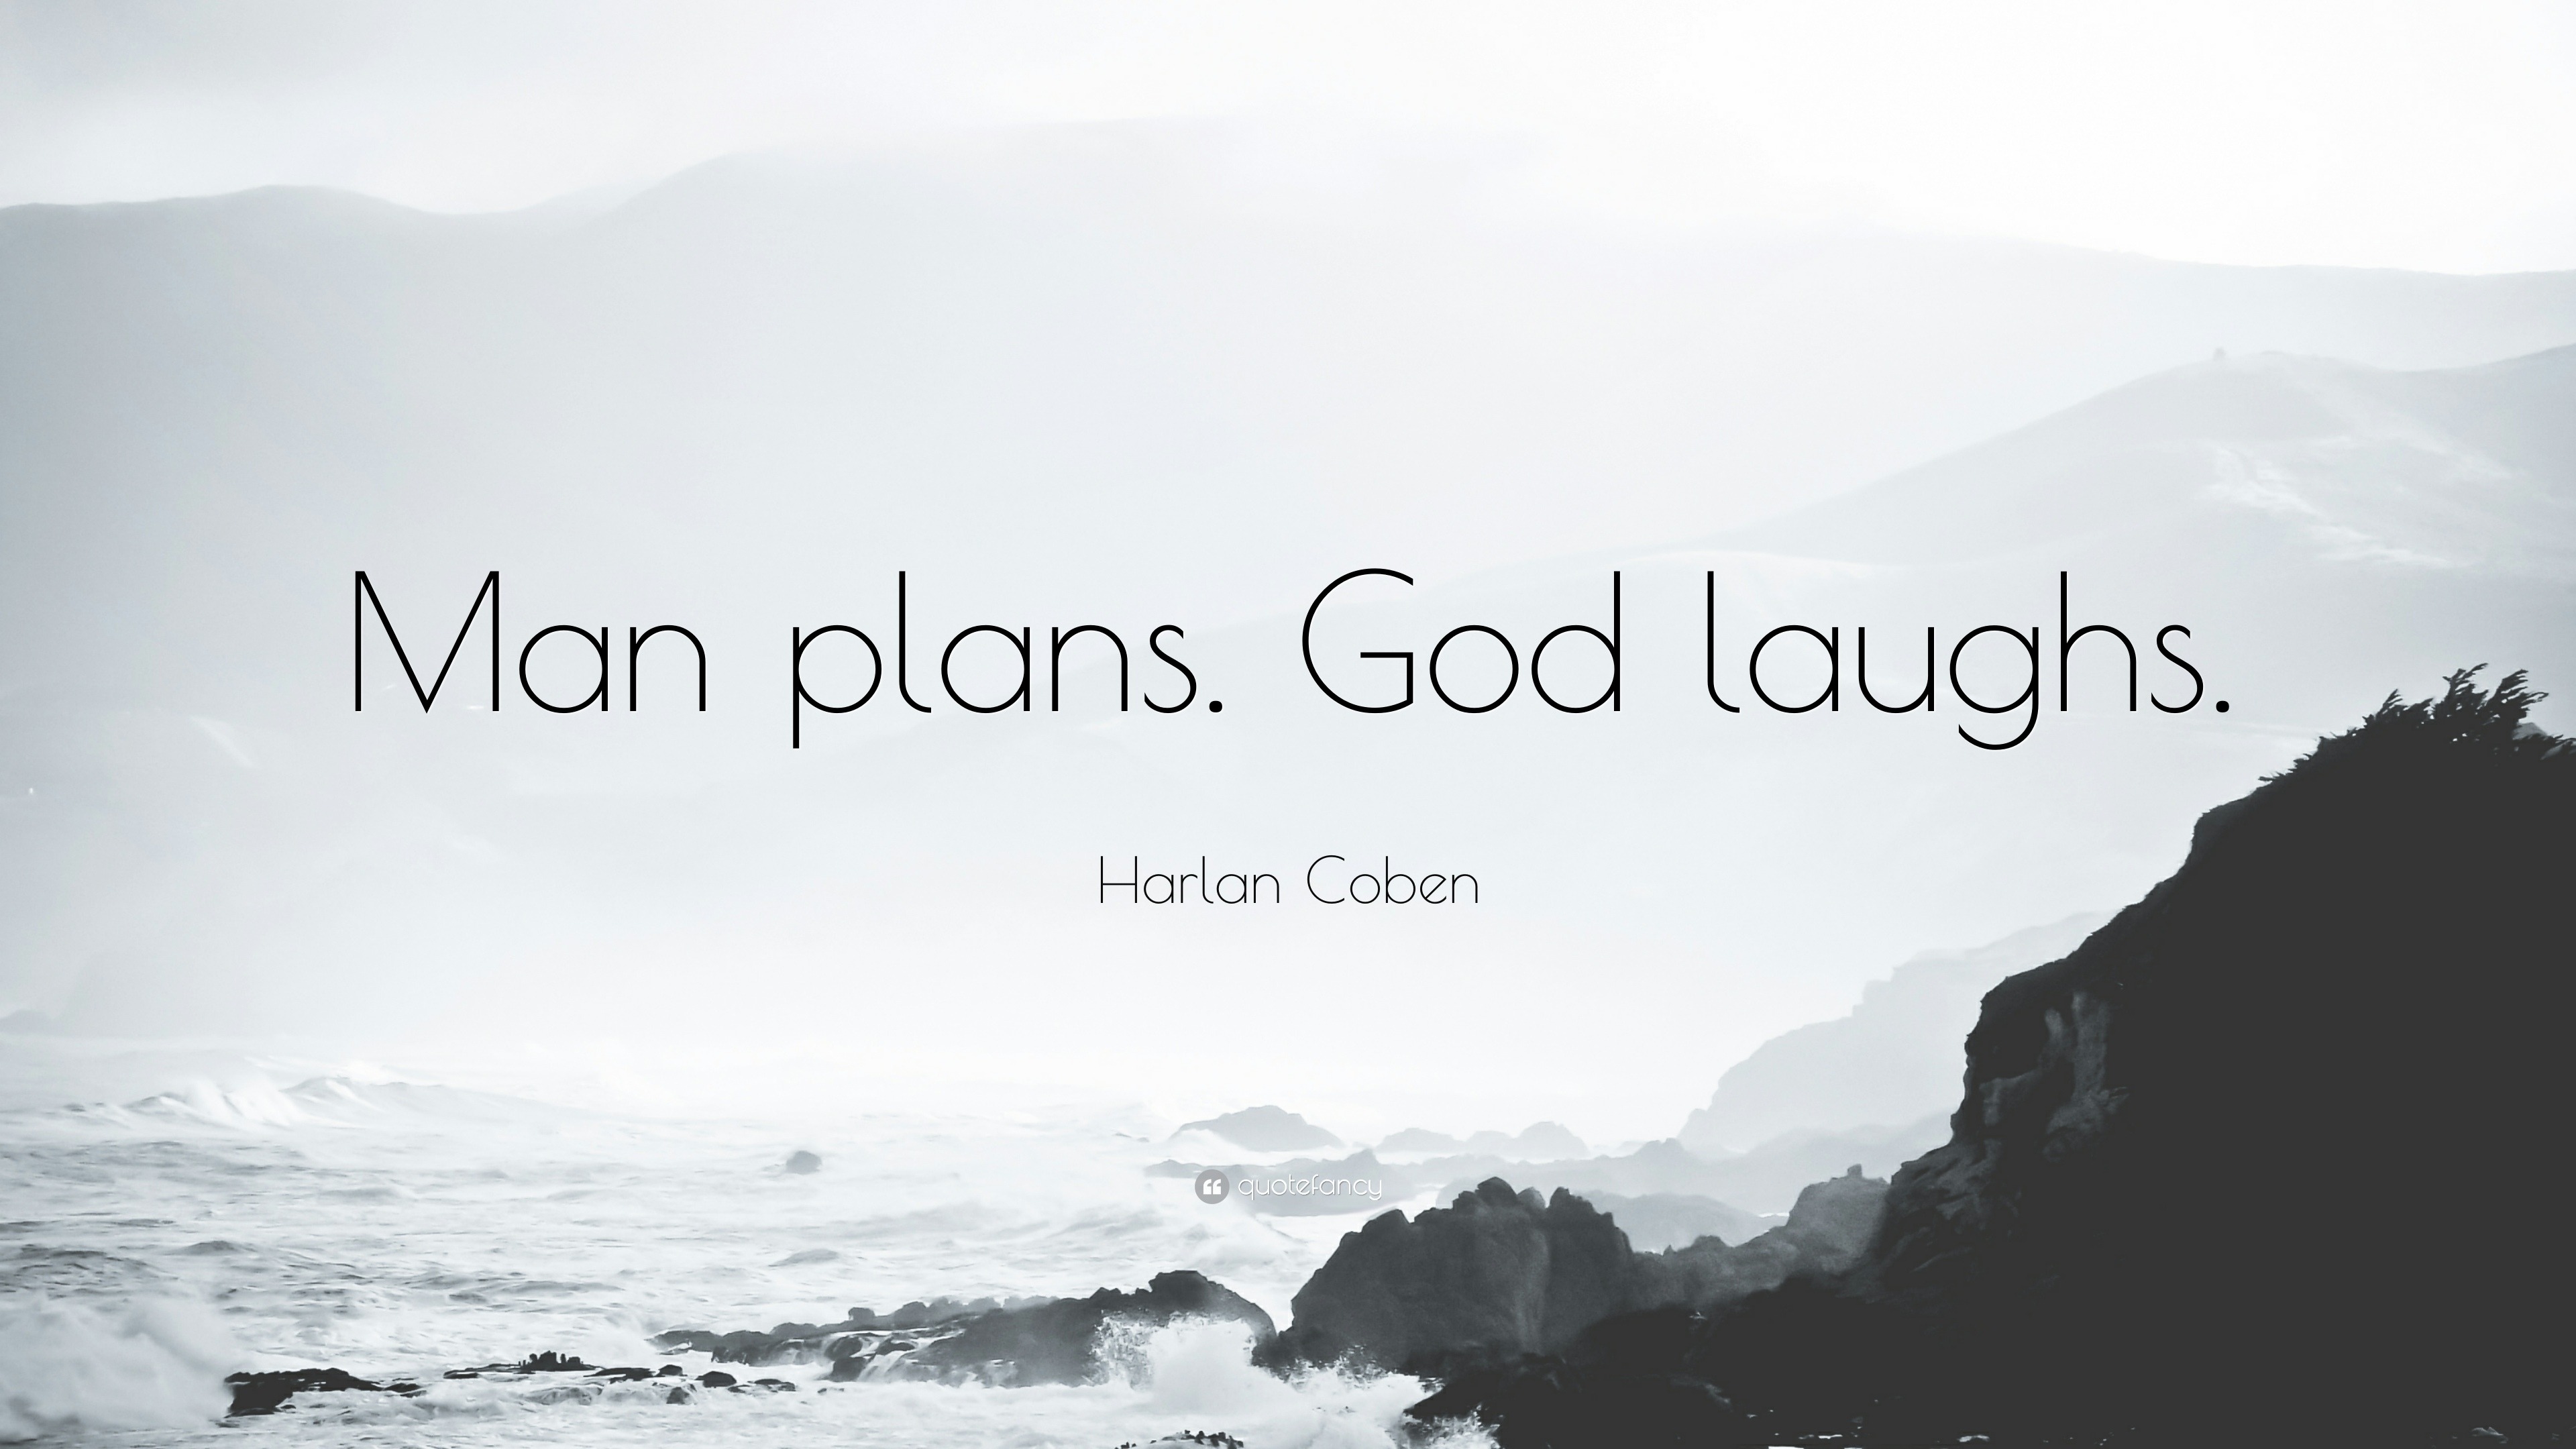 Harlan Coben Quote: "Man plans. 